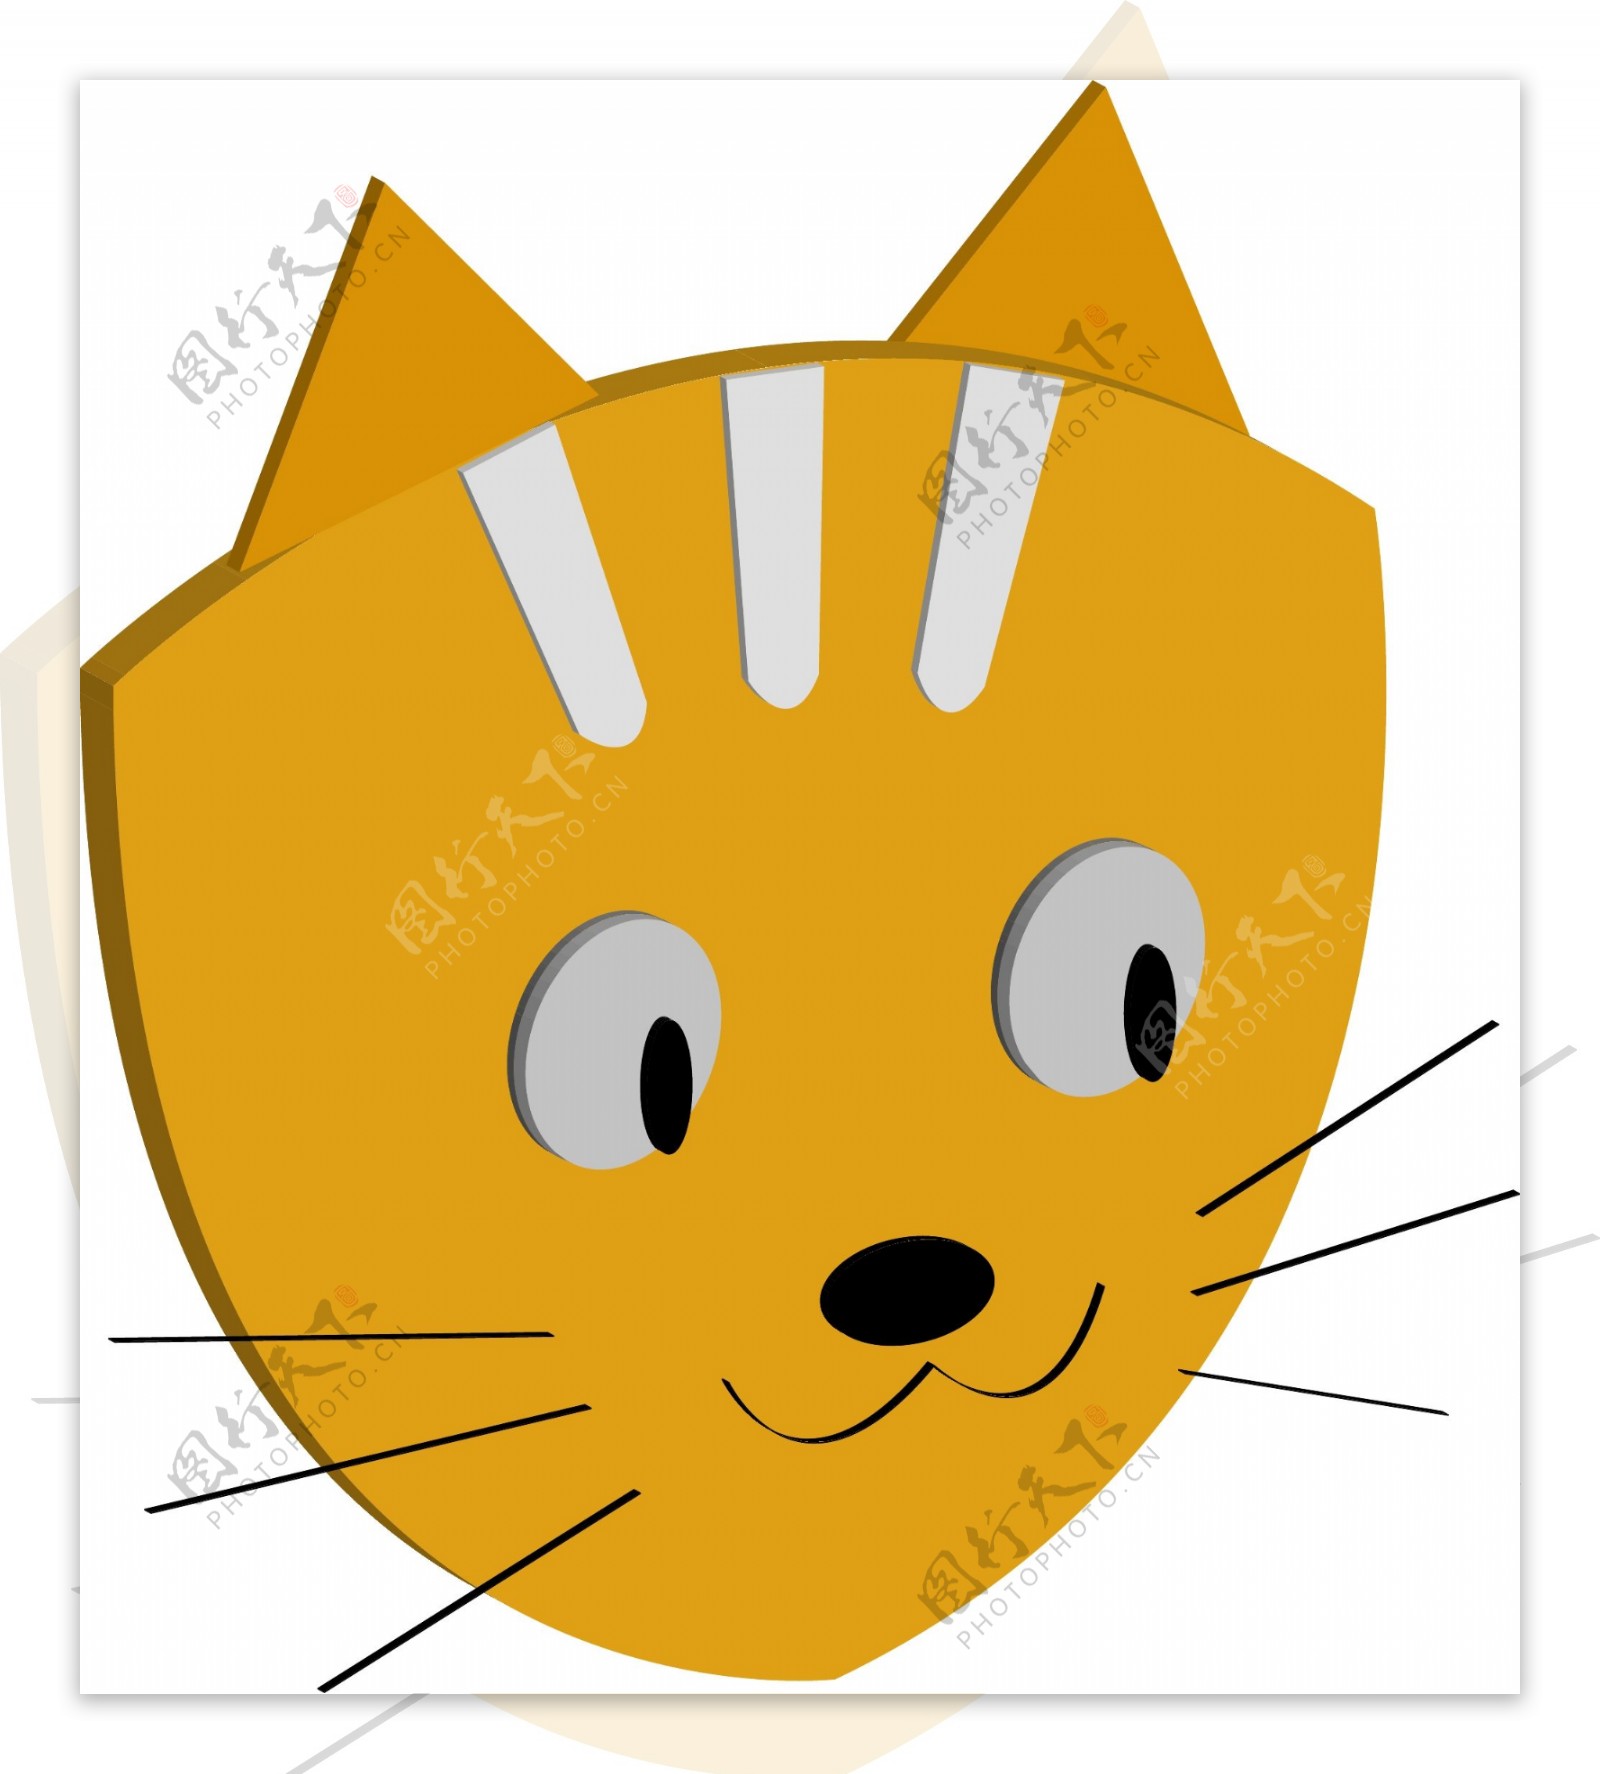 2.5d元素之卡通可爱橘猫小猫头部矢量图